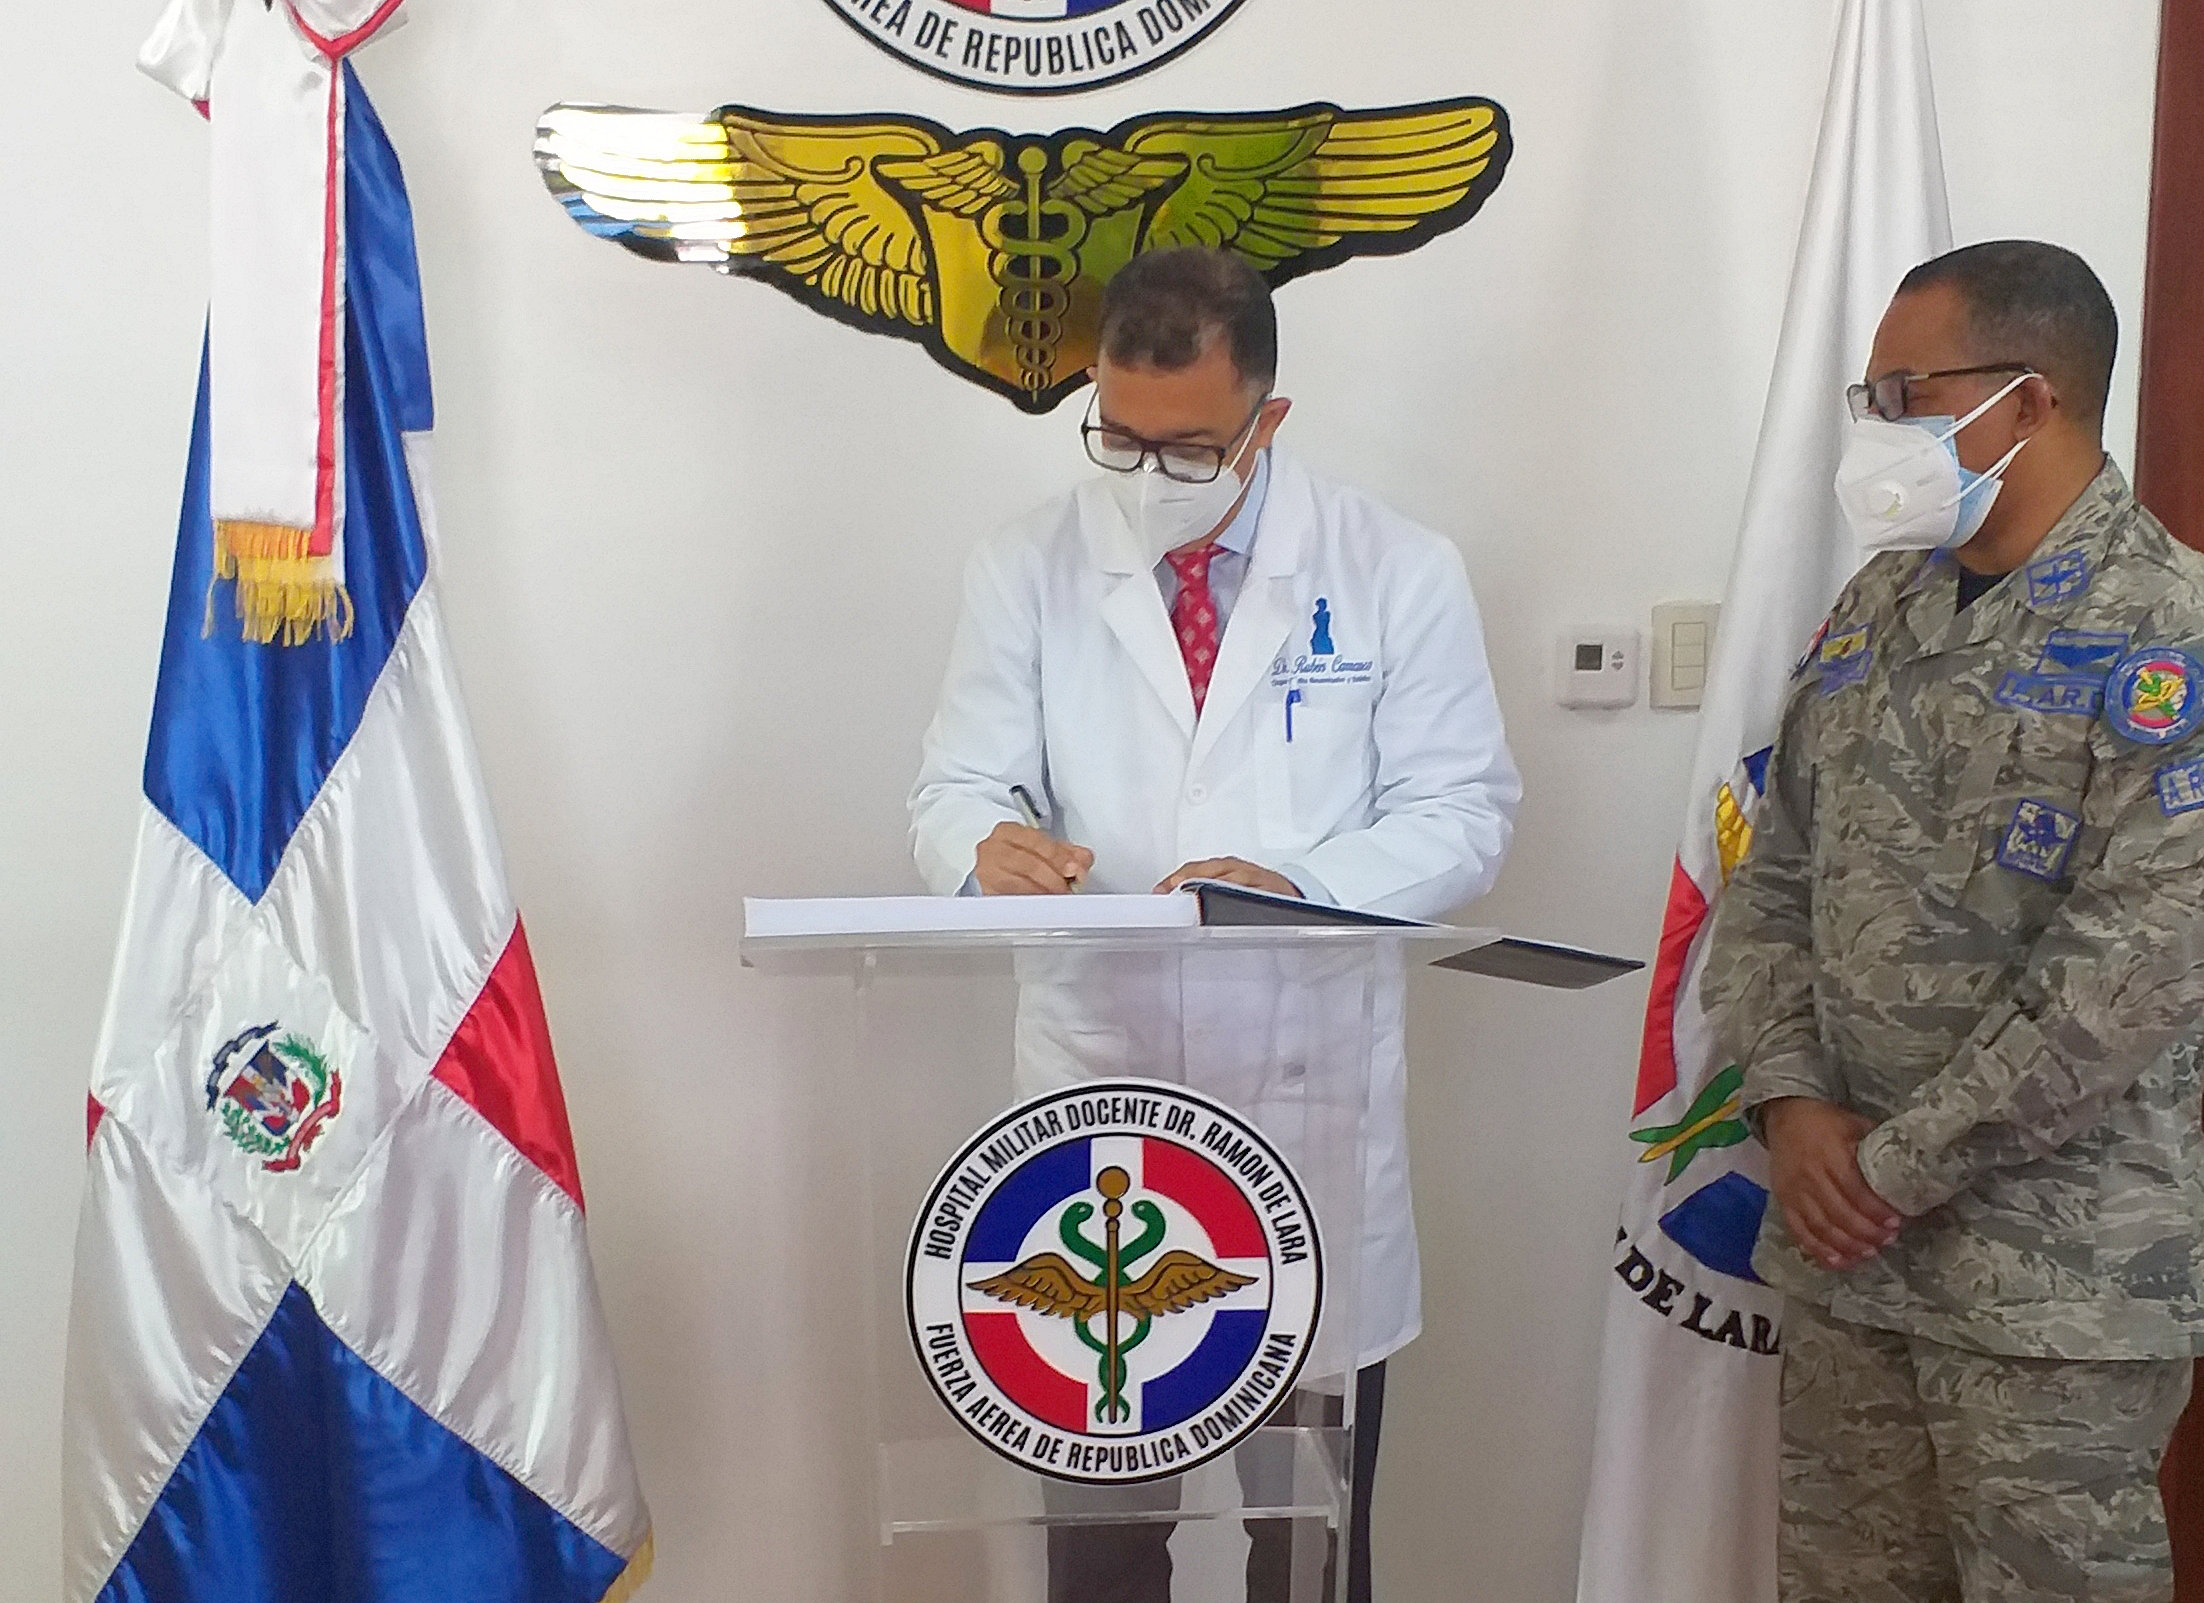 SODOCIPRE Visita Hospital Militar De La Fuerza Aérea Dominicana (FARD)